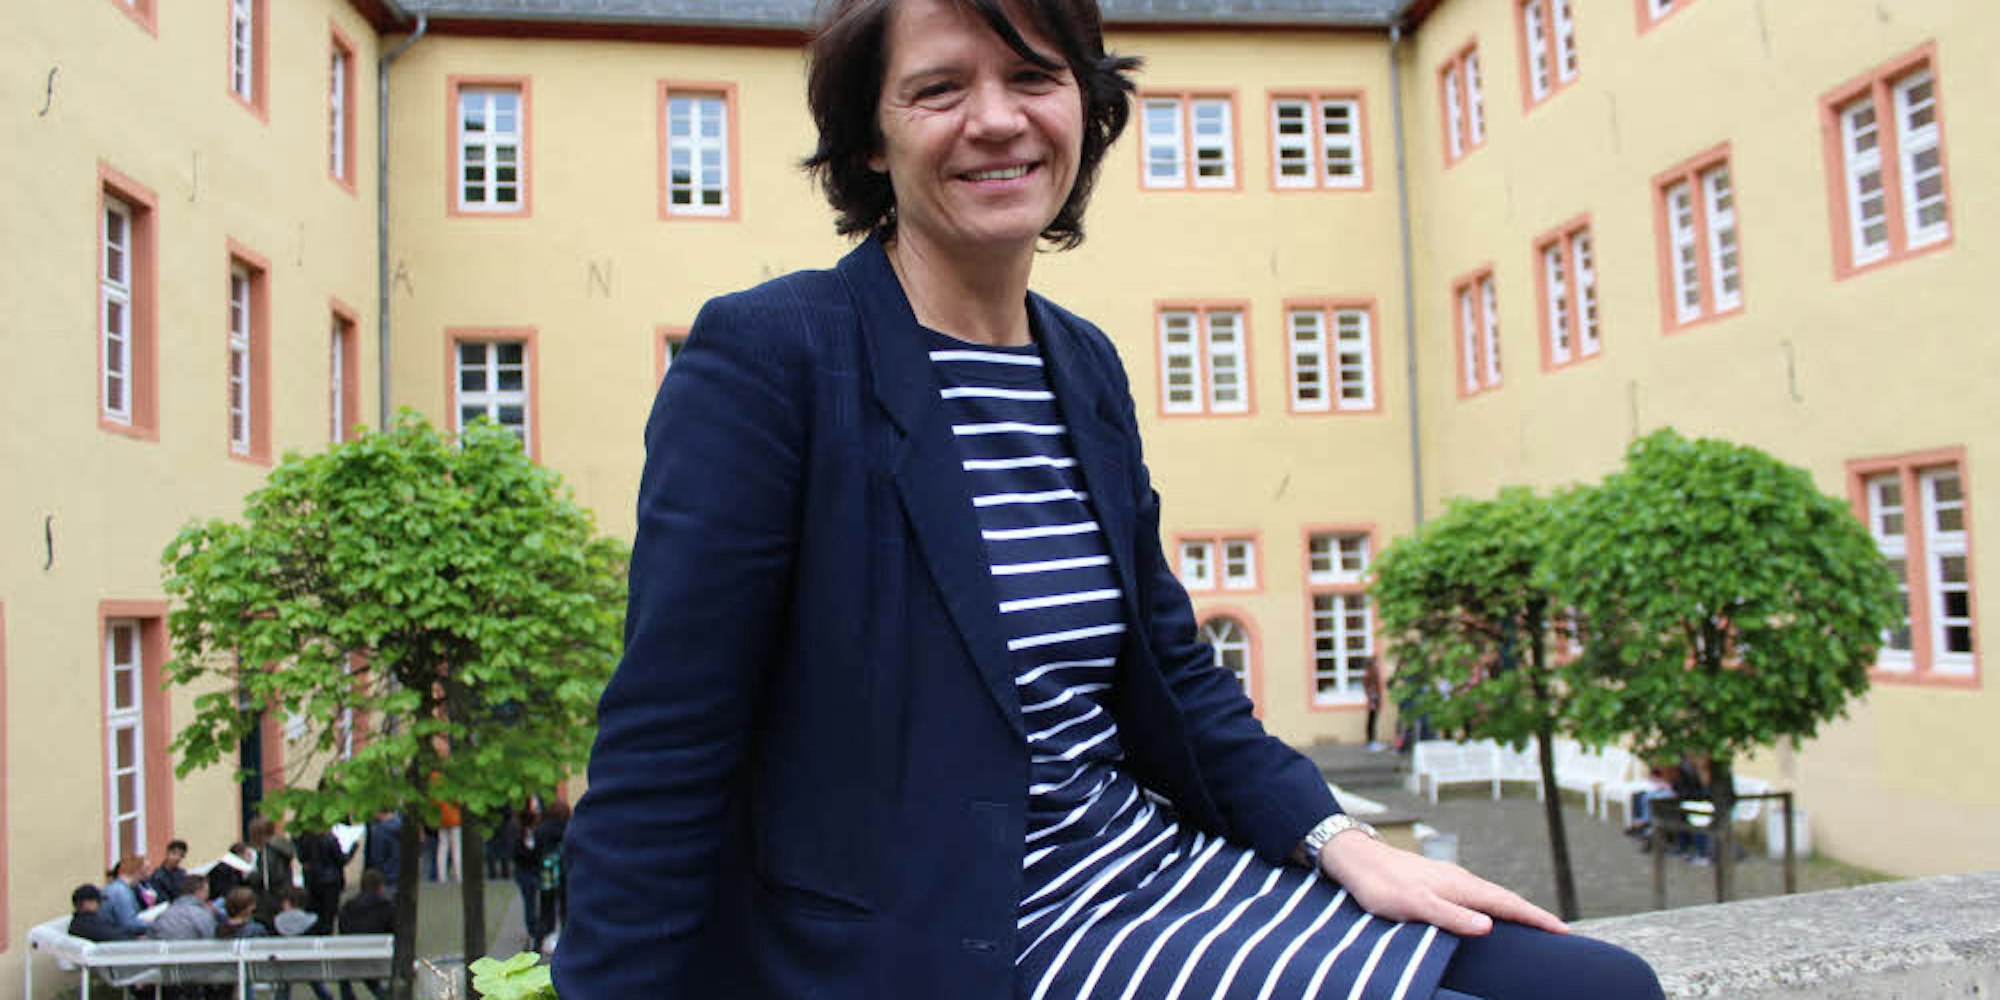 Am St.-Michael-Gymnasium fühlt sich die 53-jährige Anne Schorlepp wohl. Nach dem Ausscheiden von Paul Georg Neft und von Matthias Baum leitete sie die Schule kommissarisch.